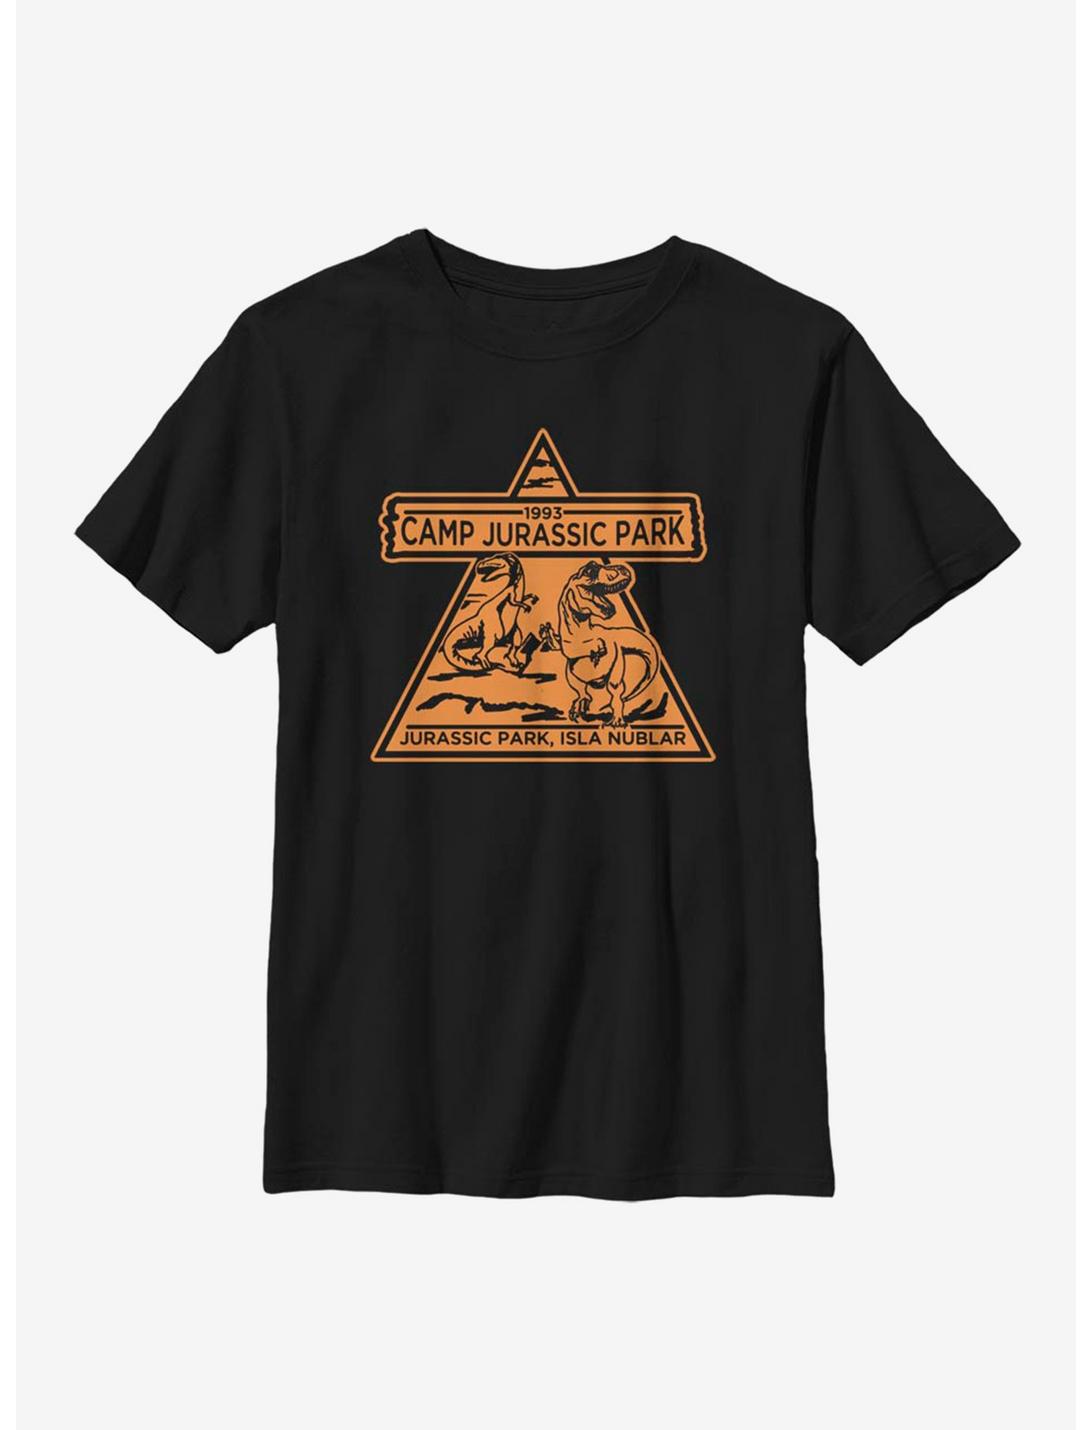 Jurassic Park Camp Jurassic 1993 Youth T-Shirt, BLACK, hi-res